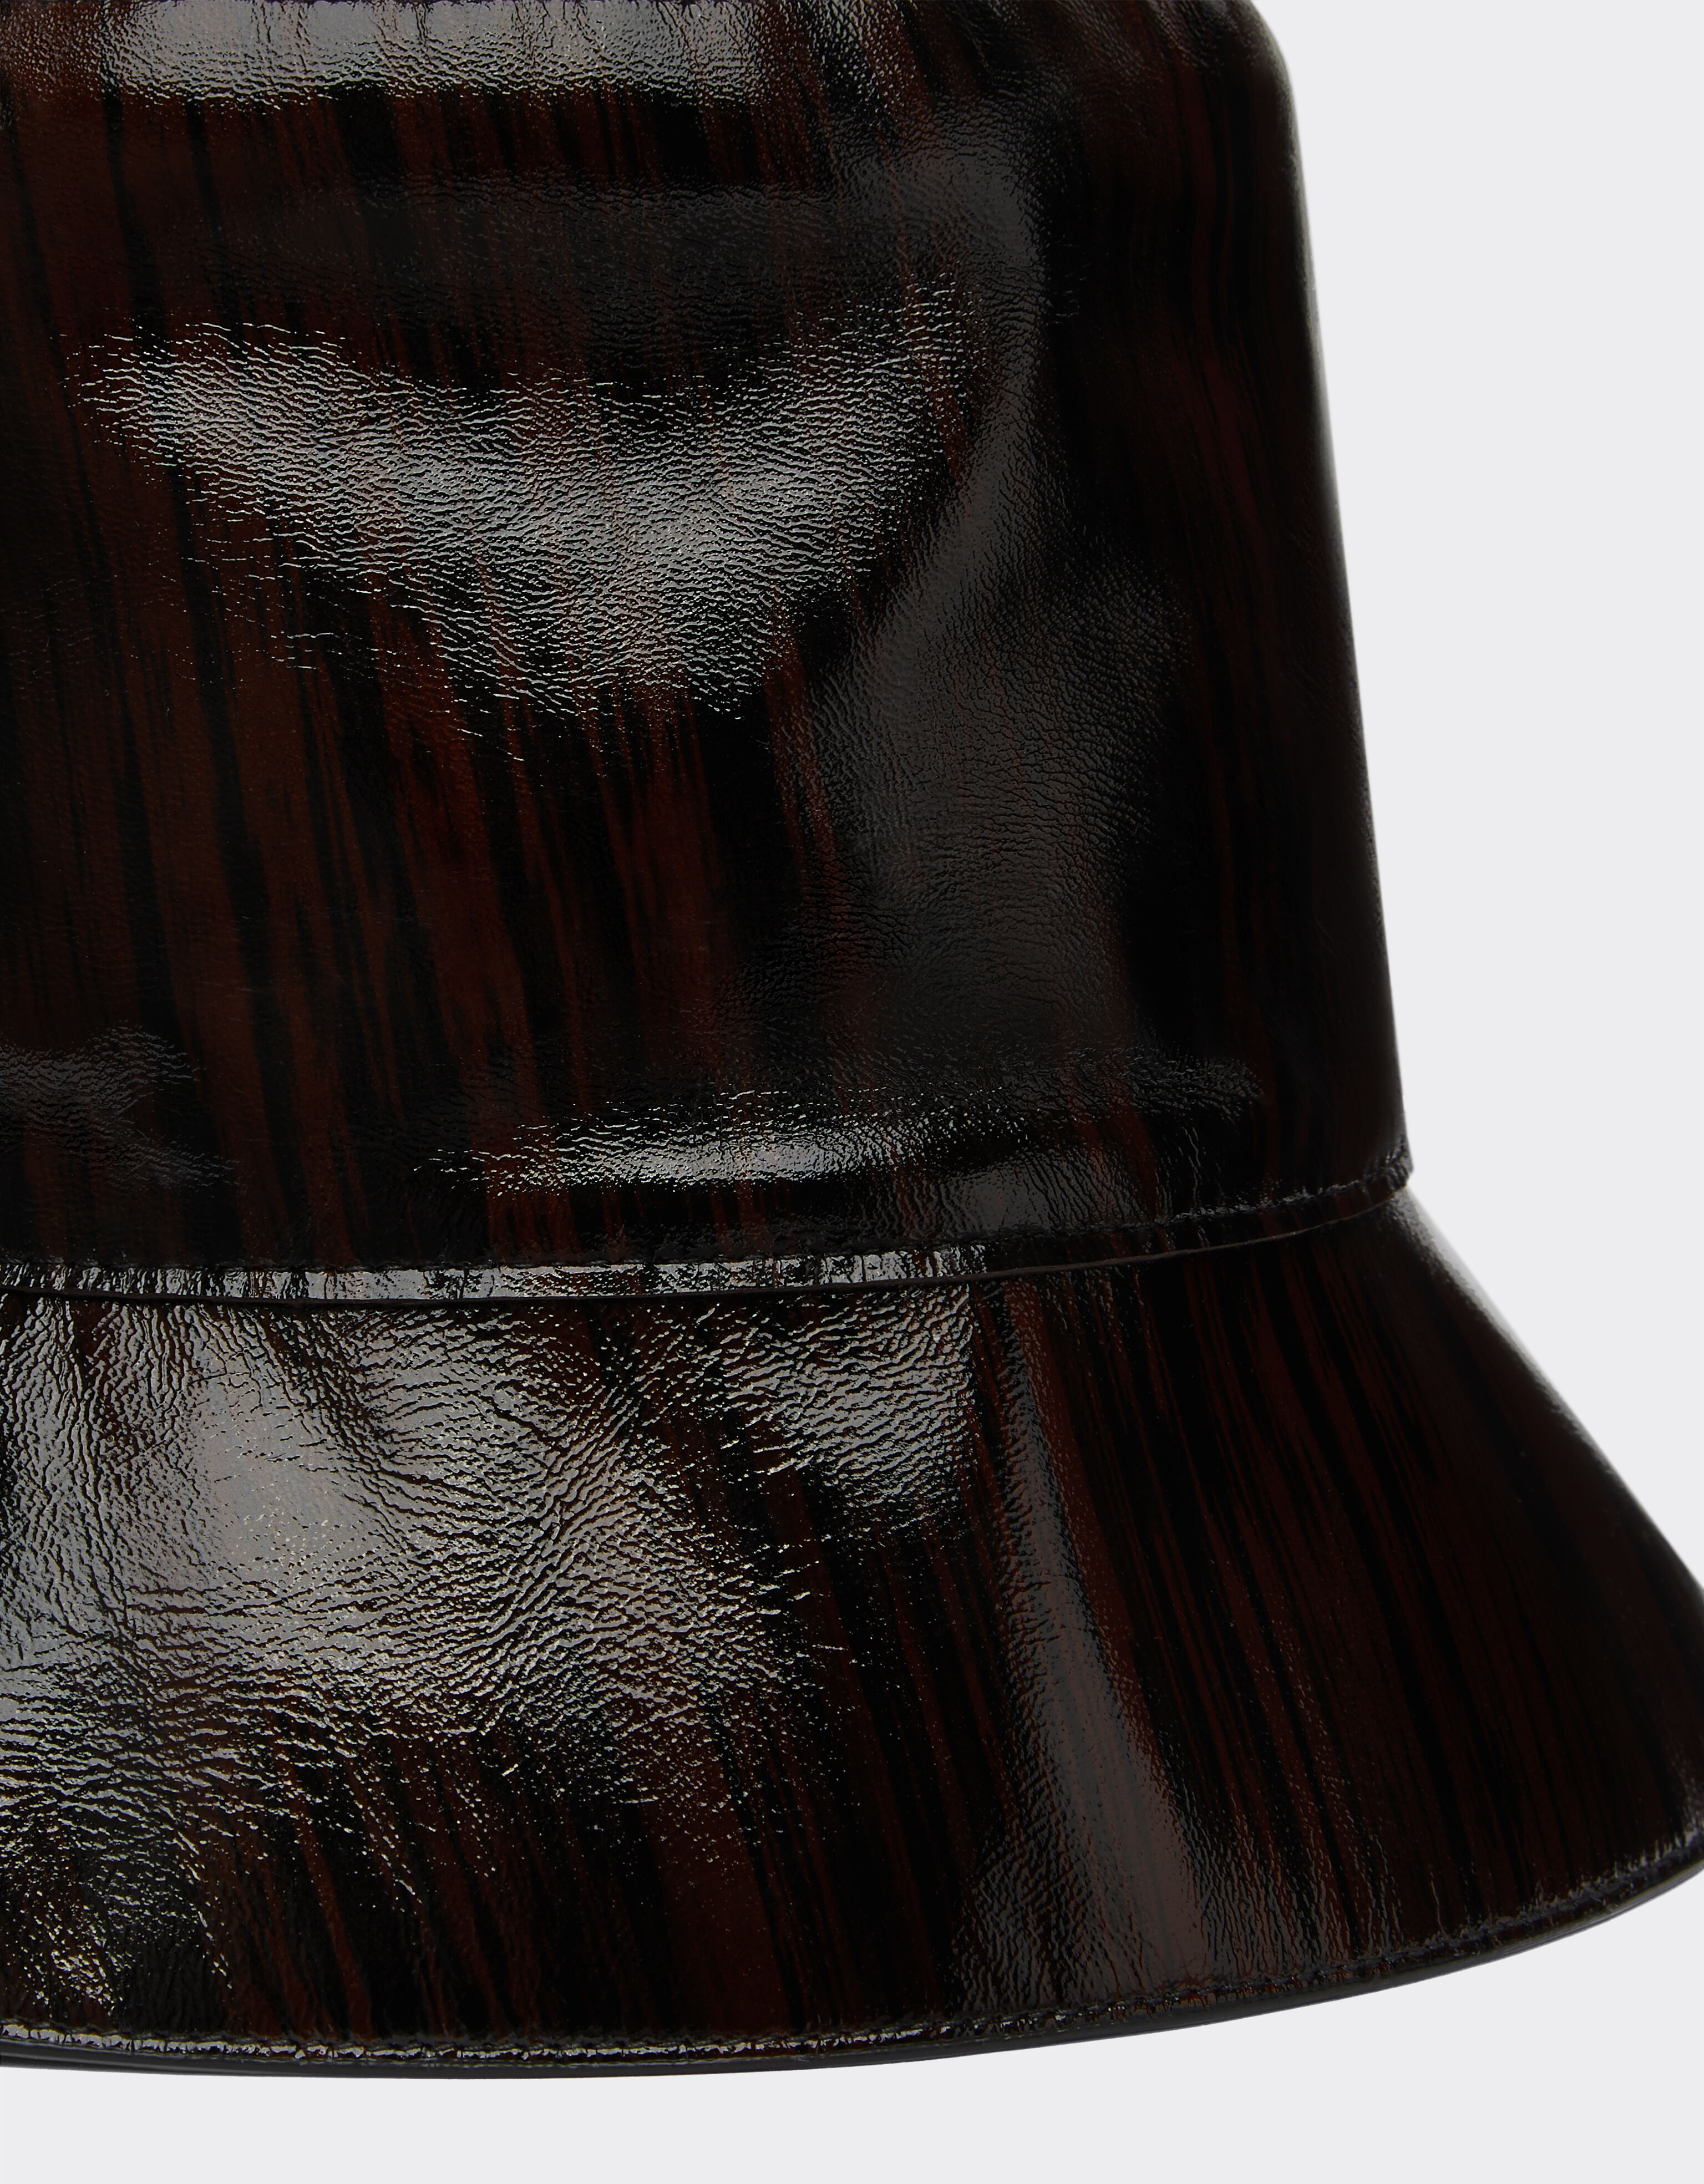 Ferrari Bucket Hat aus Glanzleder mit Brushed-Motiv Dark Brown 21218f